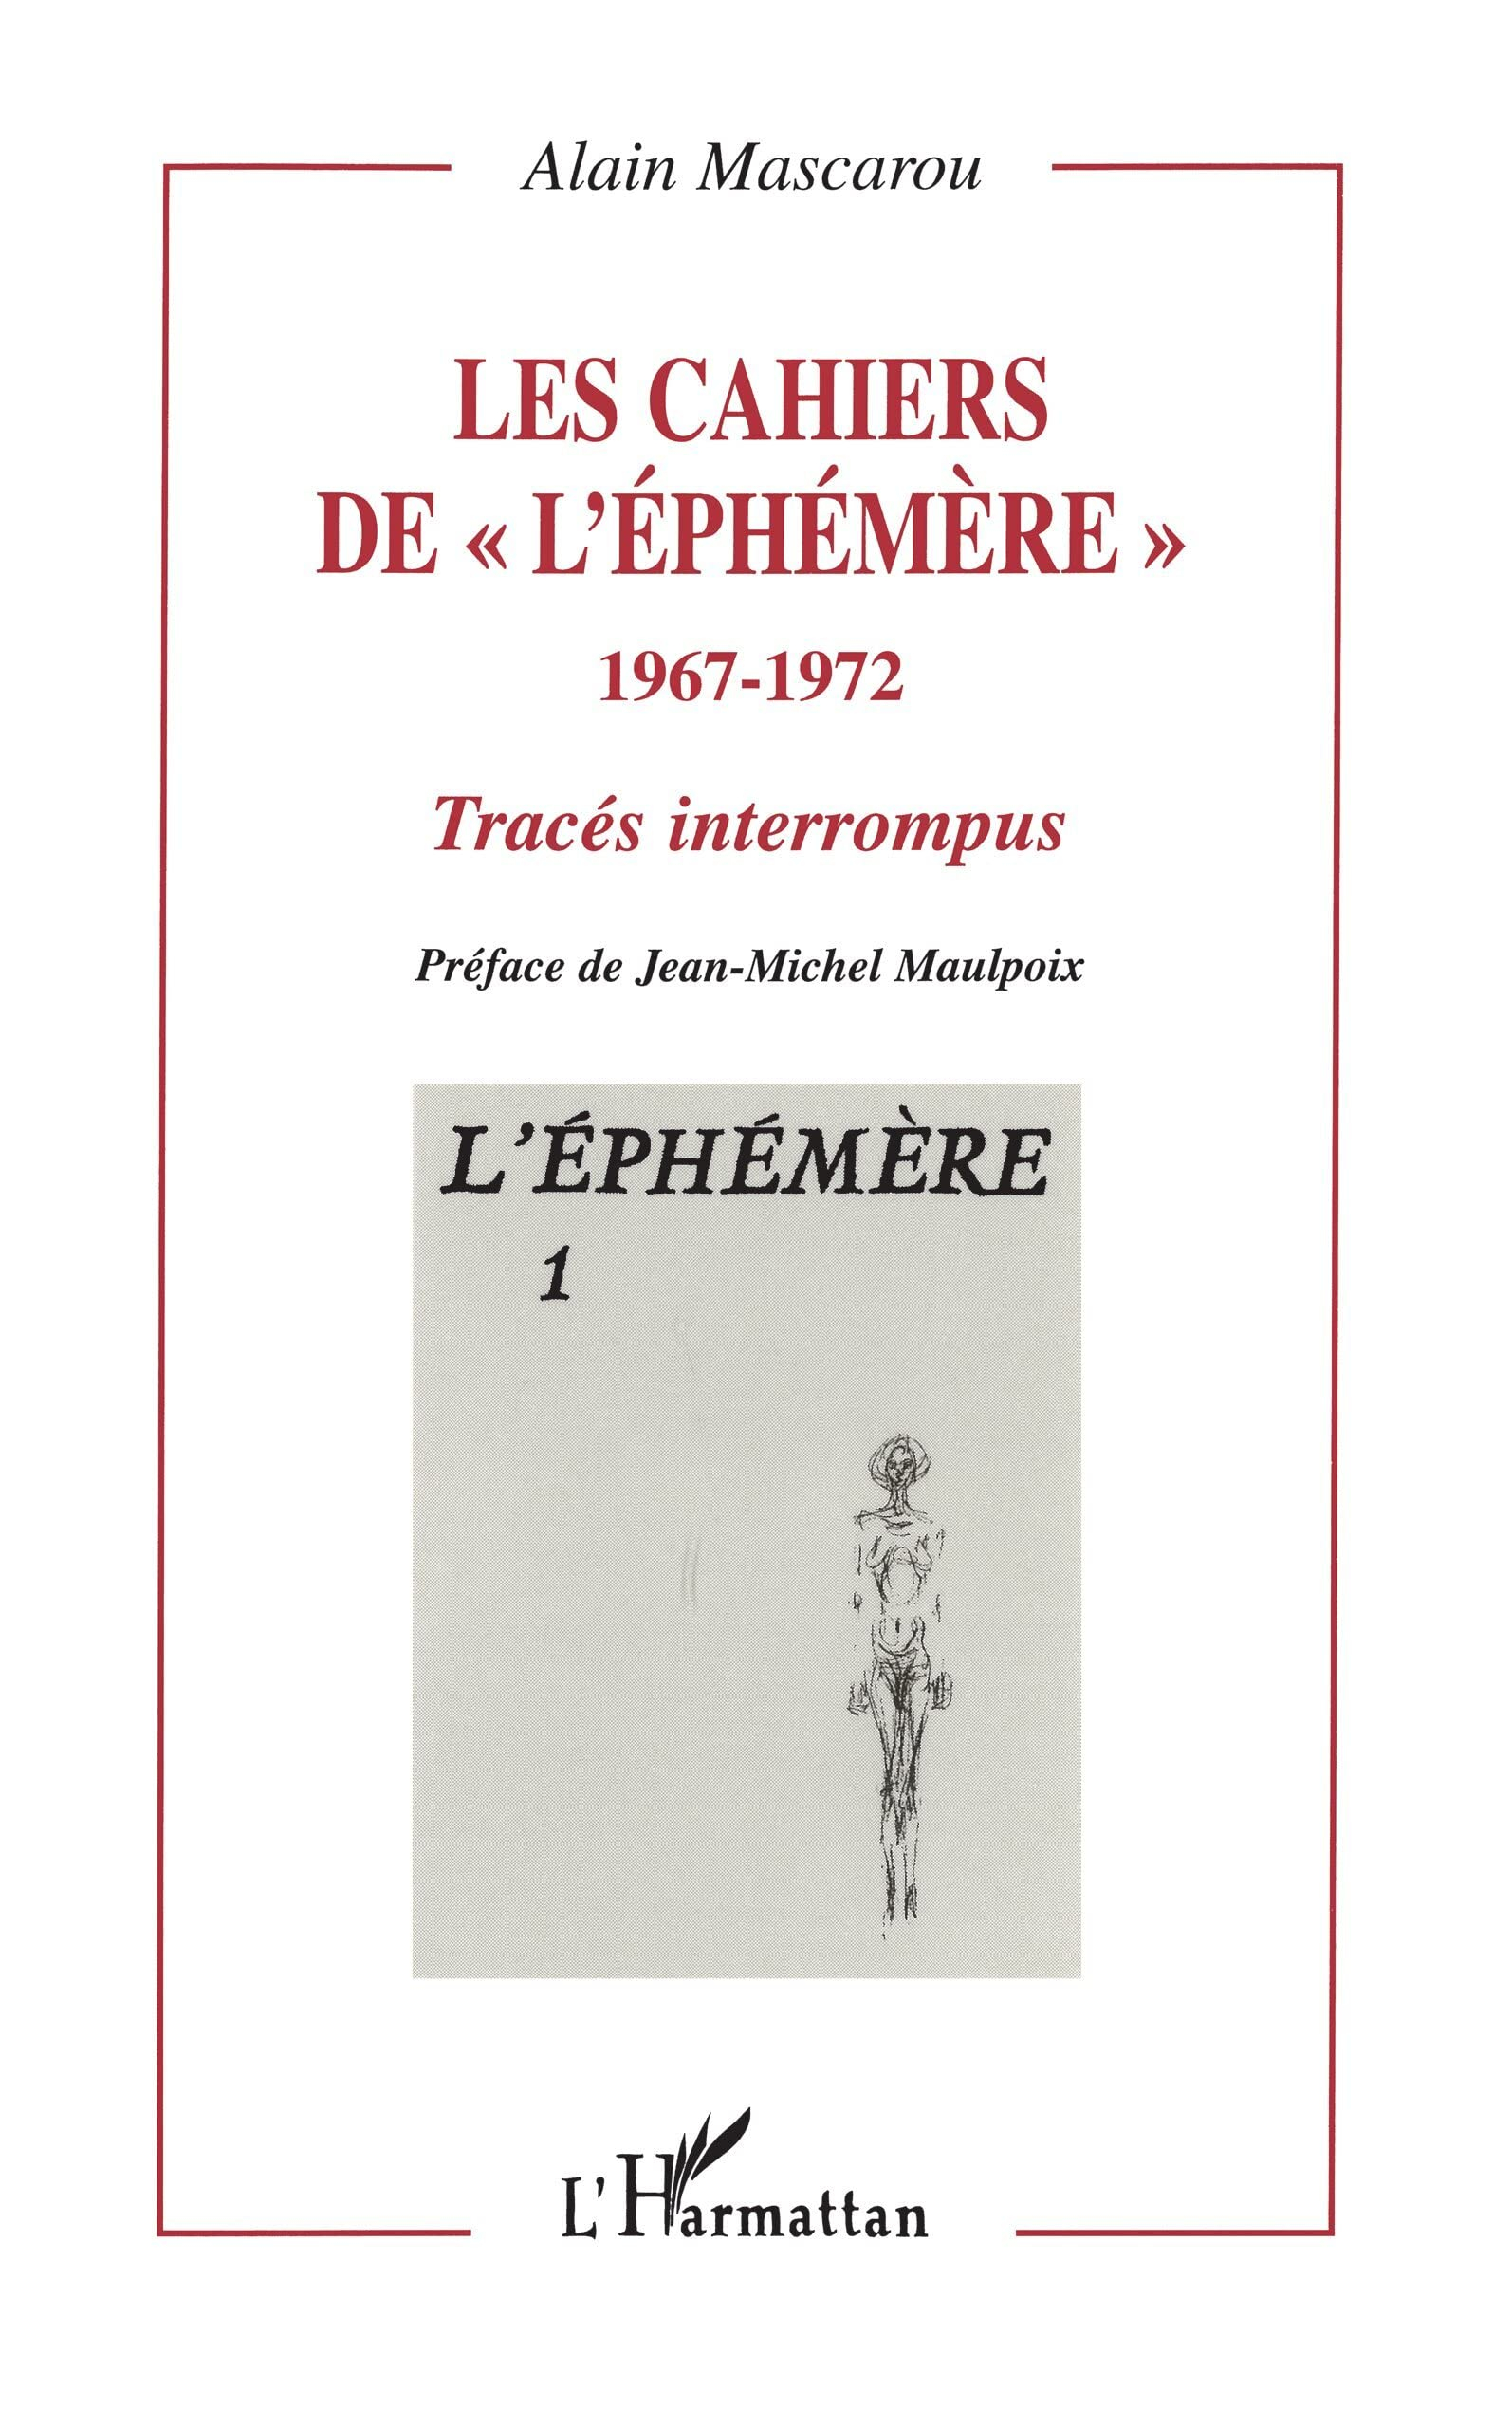 Les cahiers de l'Ephémère, 1967-1972 : tracés interrompus. Vol. 1. L'Ephémère